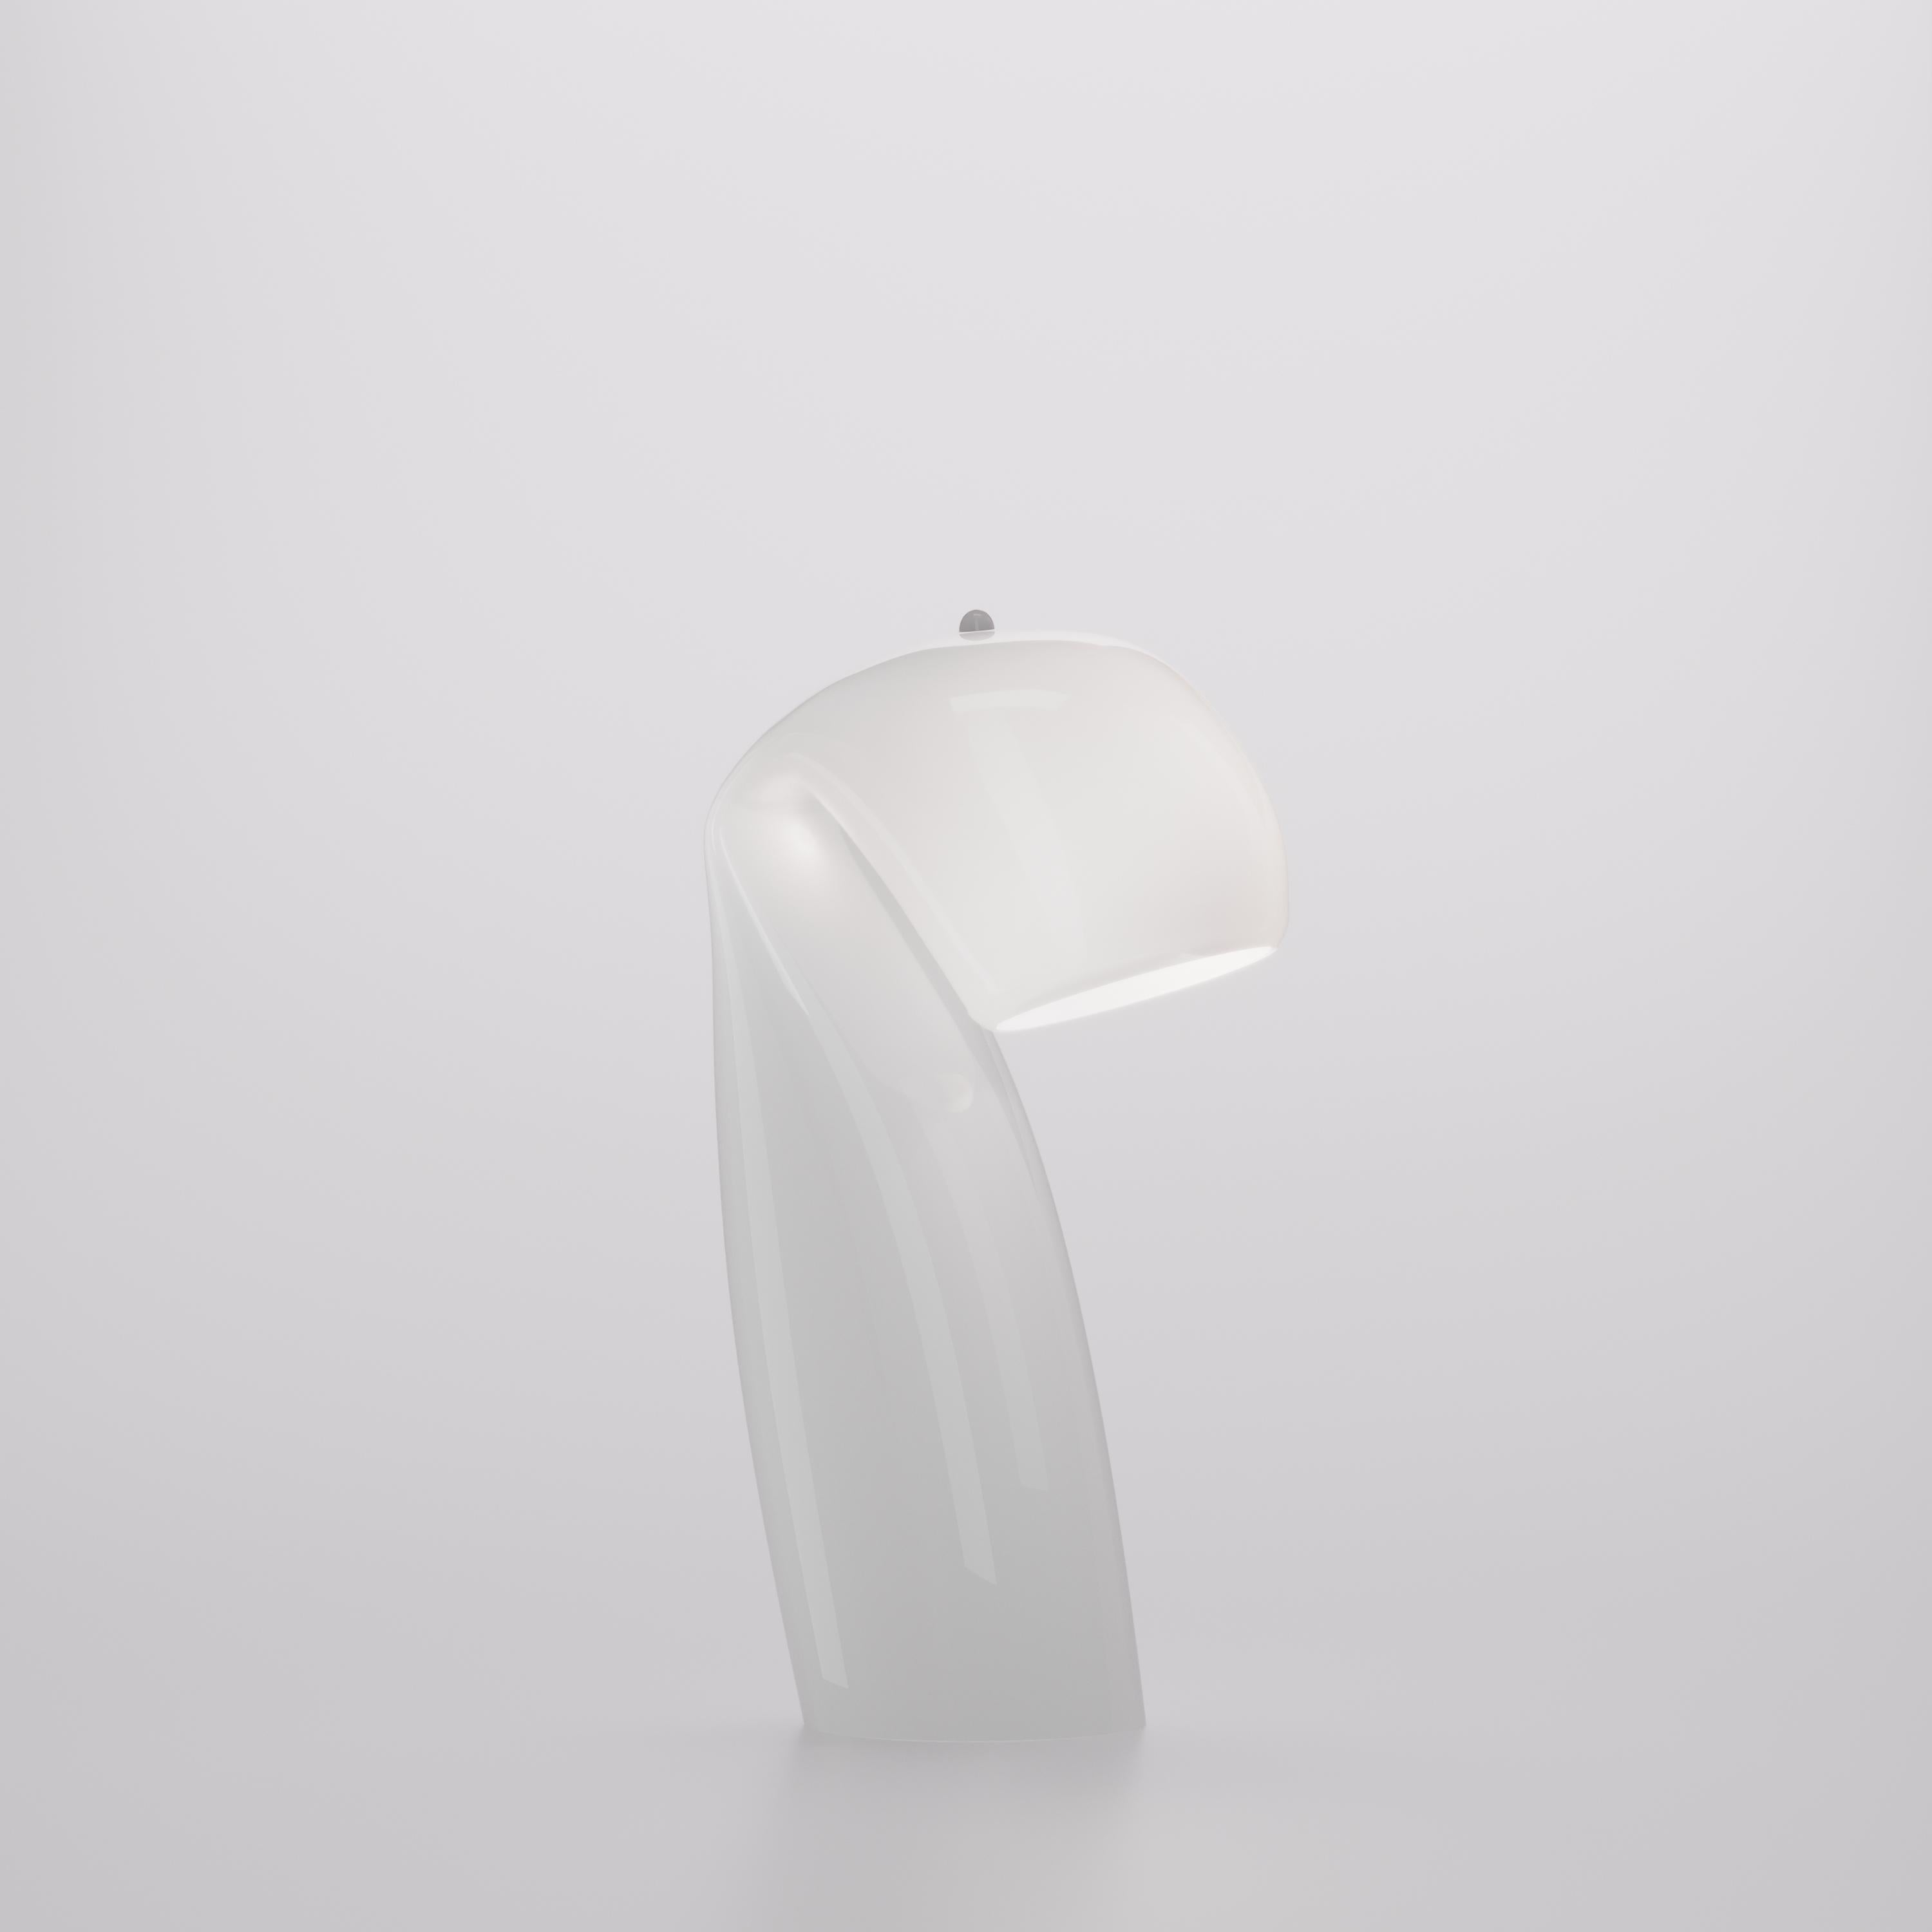 Reflétant la simplicité du design vintage, la lampe à poser Bissa est dotée d'un verre de haute qualité et d'un caractère unique qui complète sa production artisanale. Verre coloré en blanc brillant. Pièces métalliques en blanc. Eclairage G9.

 